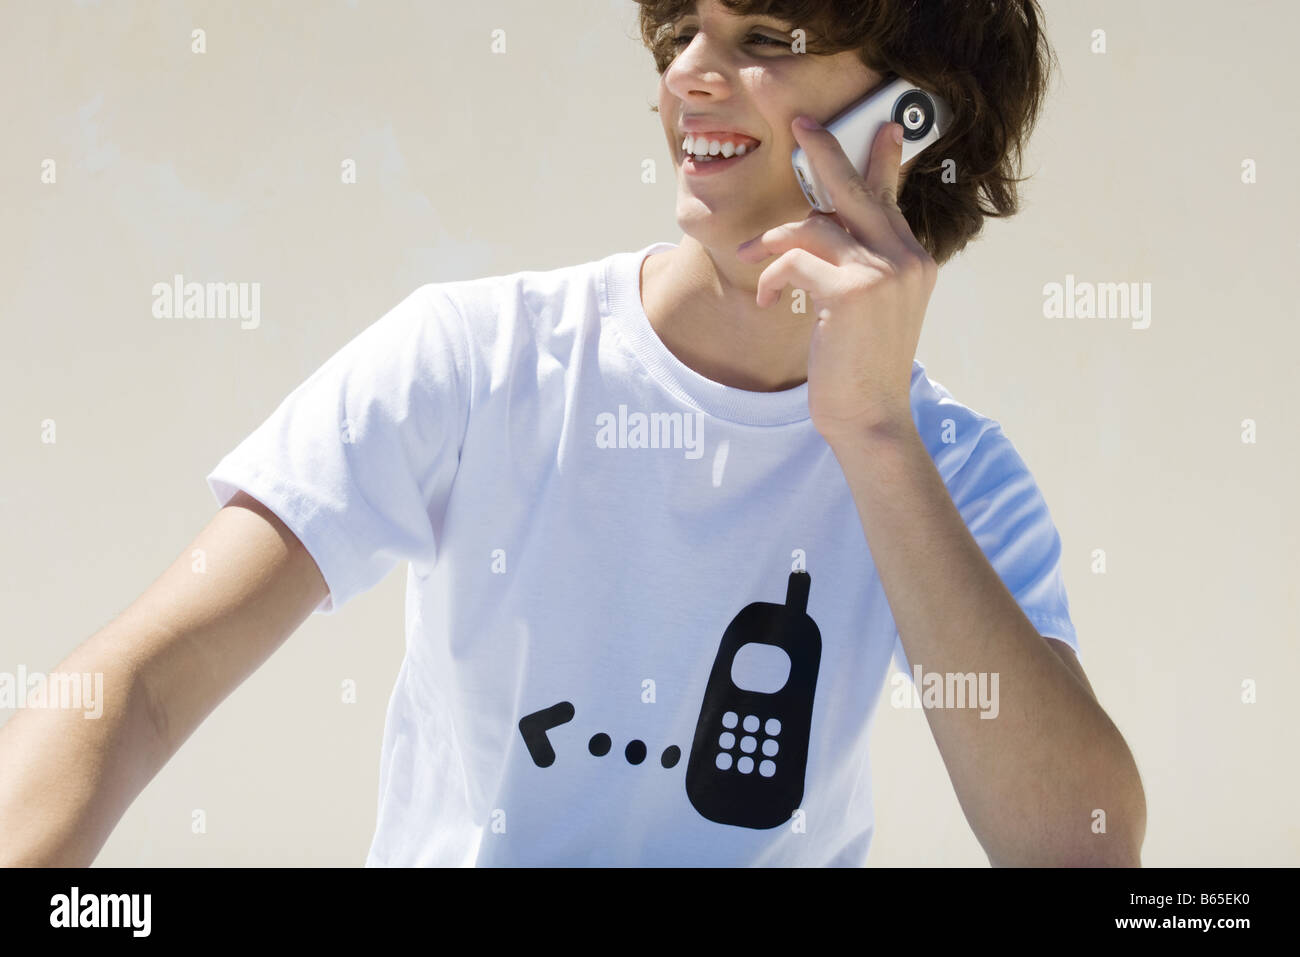 Teenage boy wearing tee-shirt imprimé avec le téléphone cellulaire, à l'aide graphique cell phone, smiling Banque D'Images